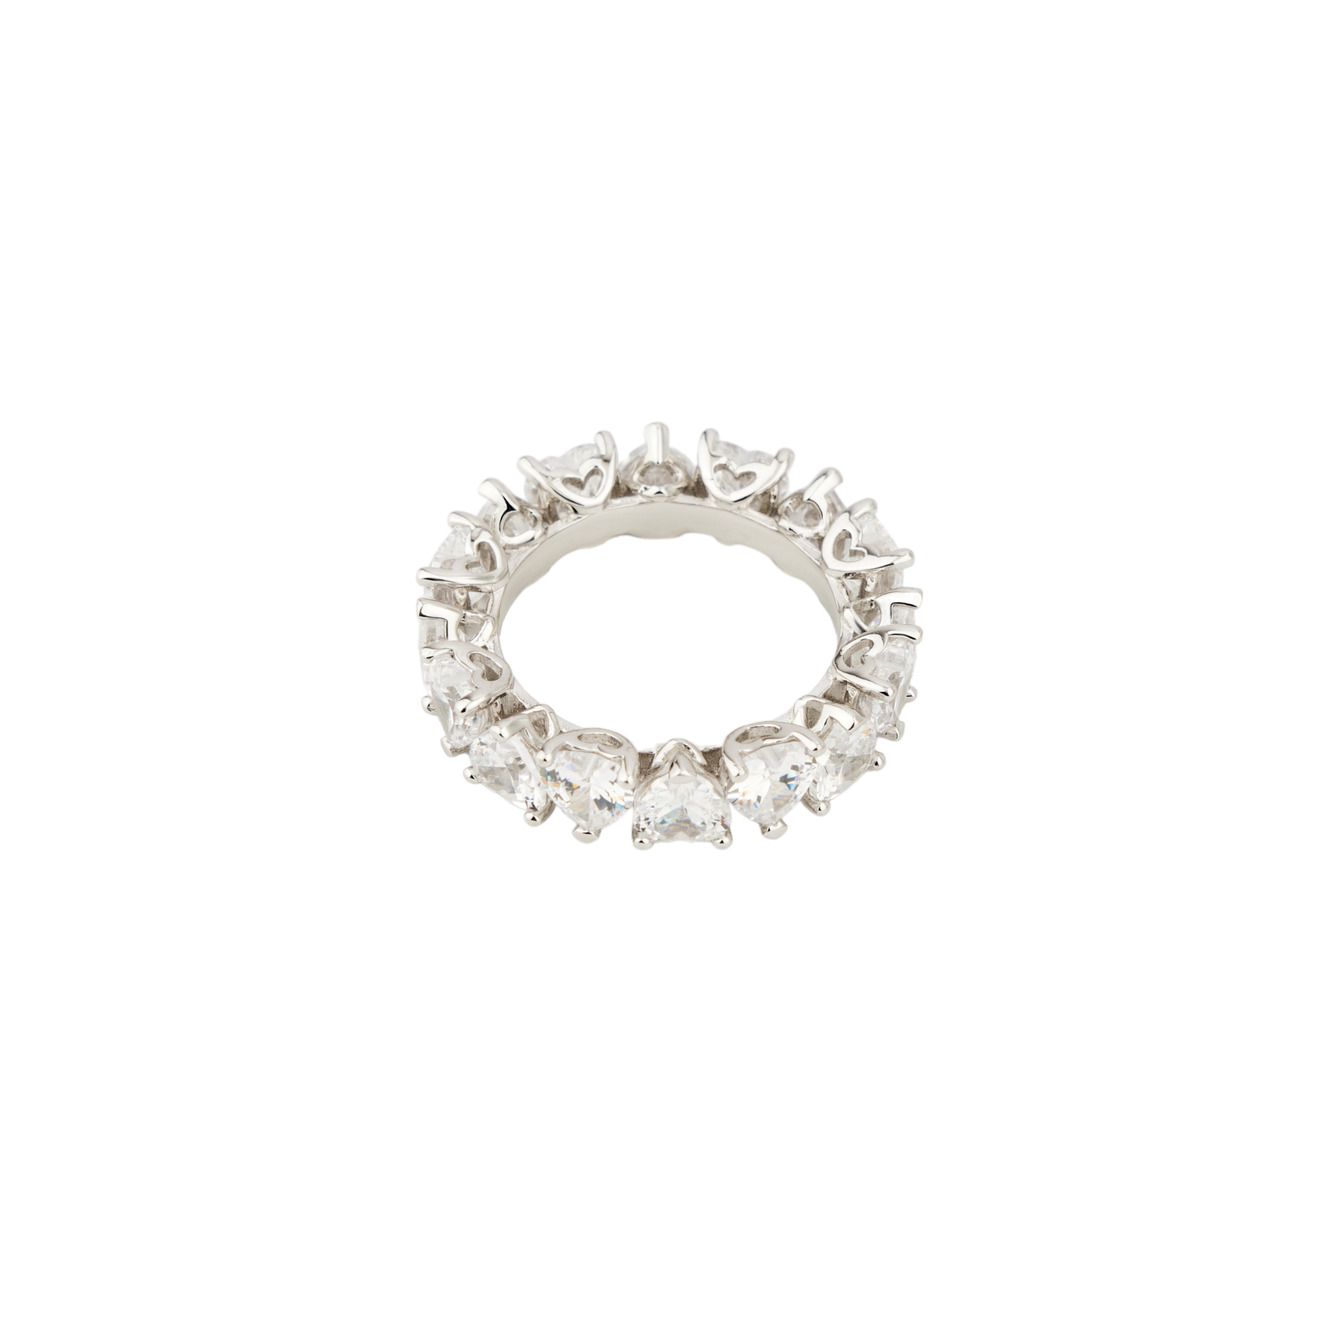 Holy Silver Тонкое кольцо из дорожки белых кристаллов holy silver кольцо дорожка из розовых и белых кристаллов разной формы